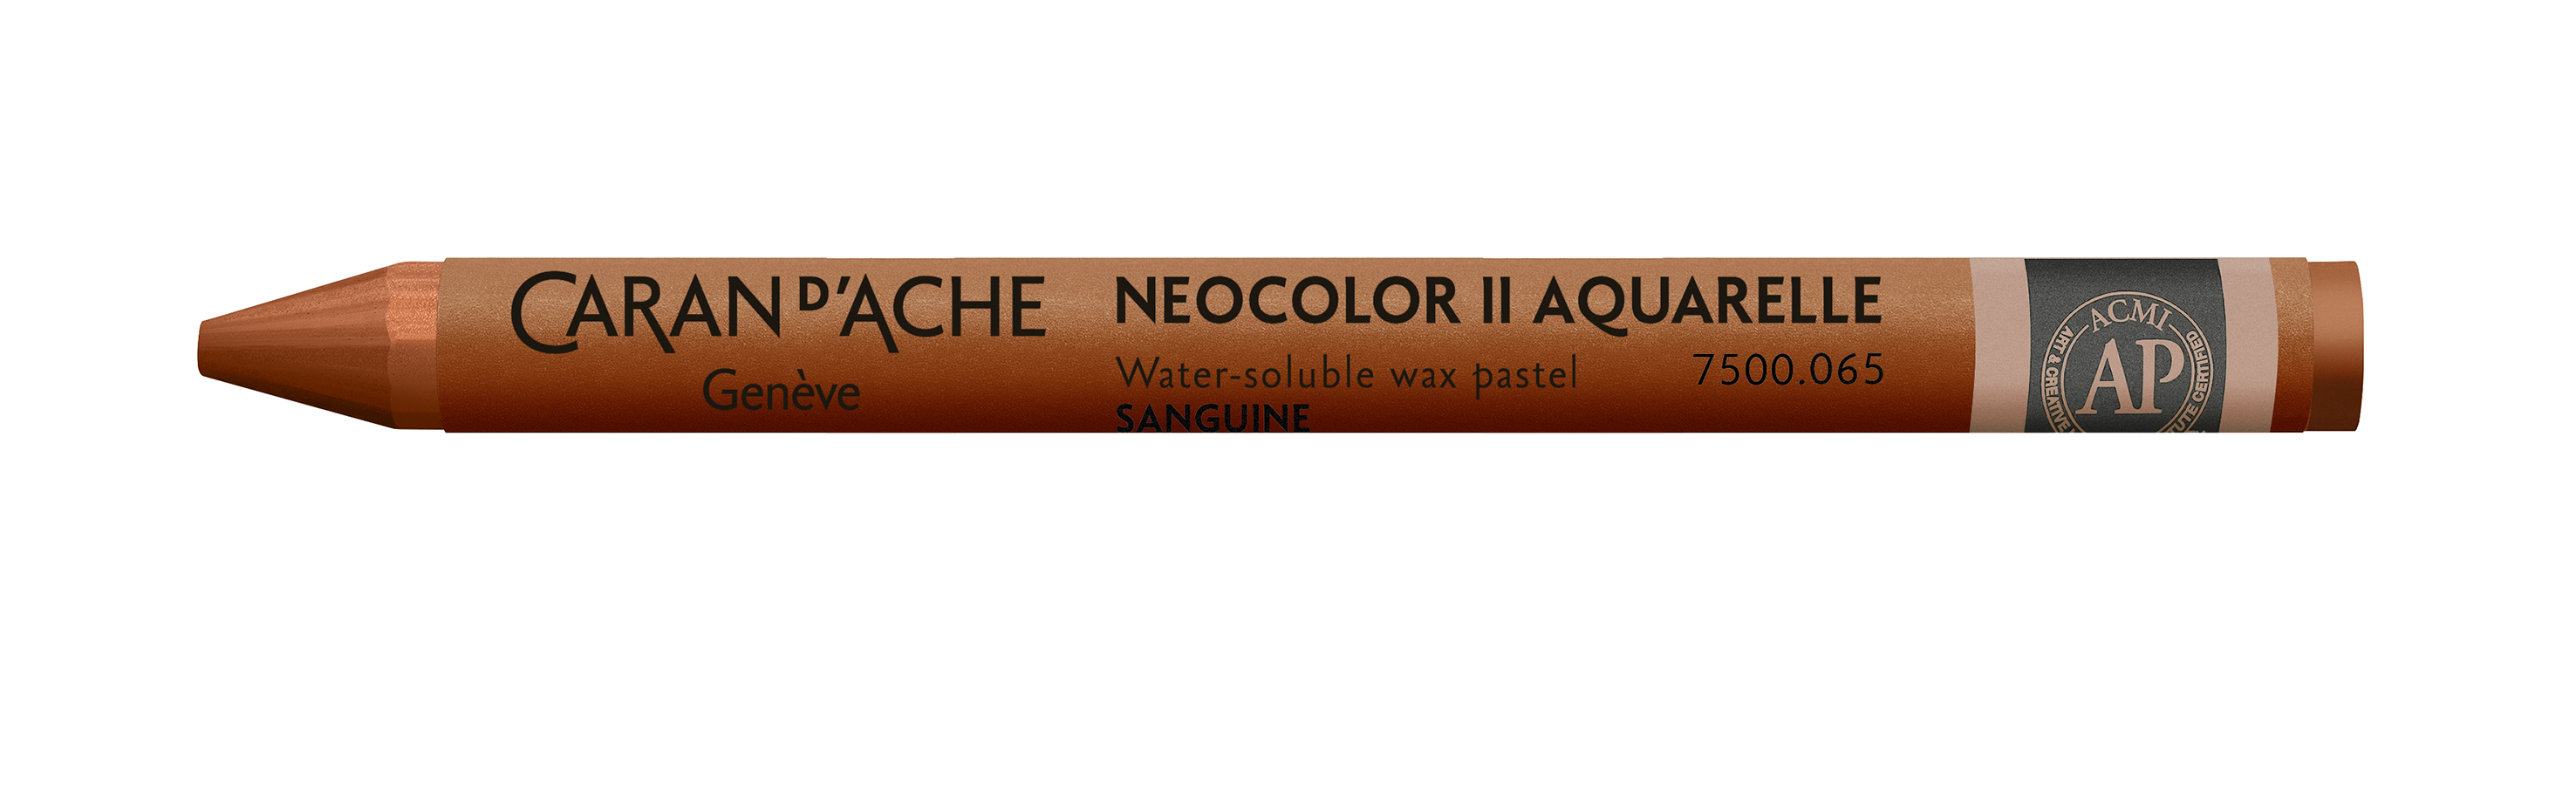 Caran D'Ache Neocolor II Watersoluble wax pastel